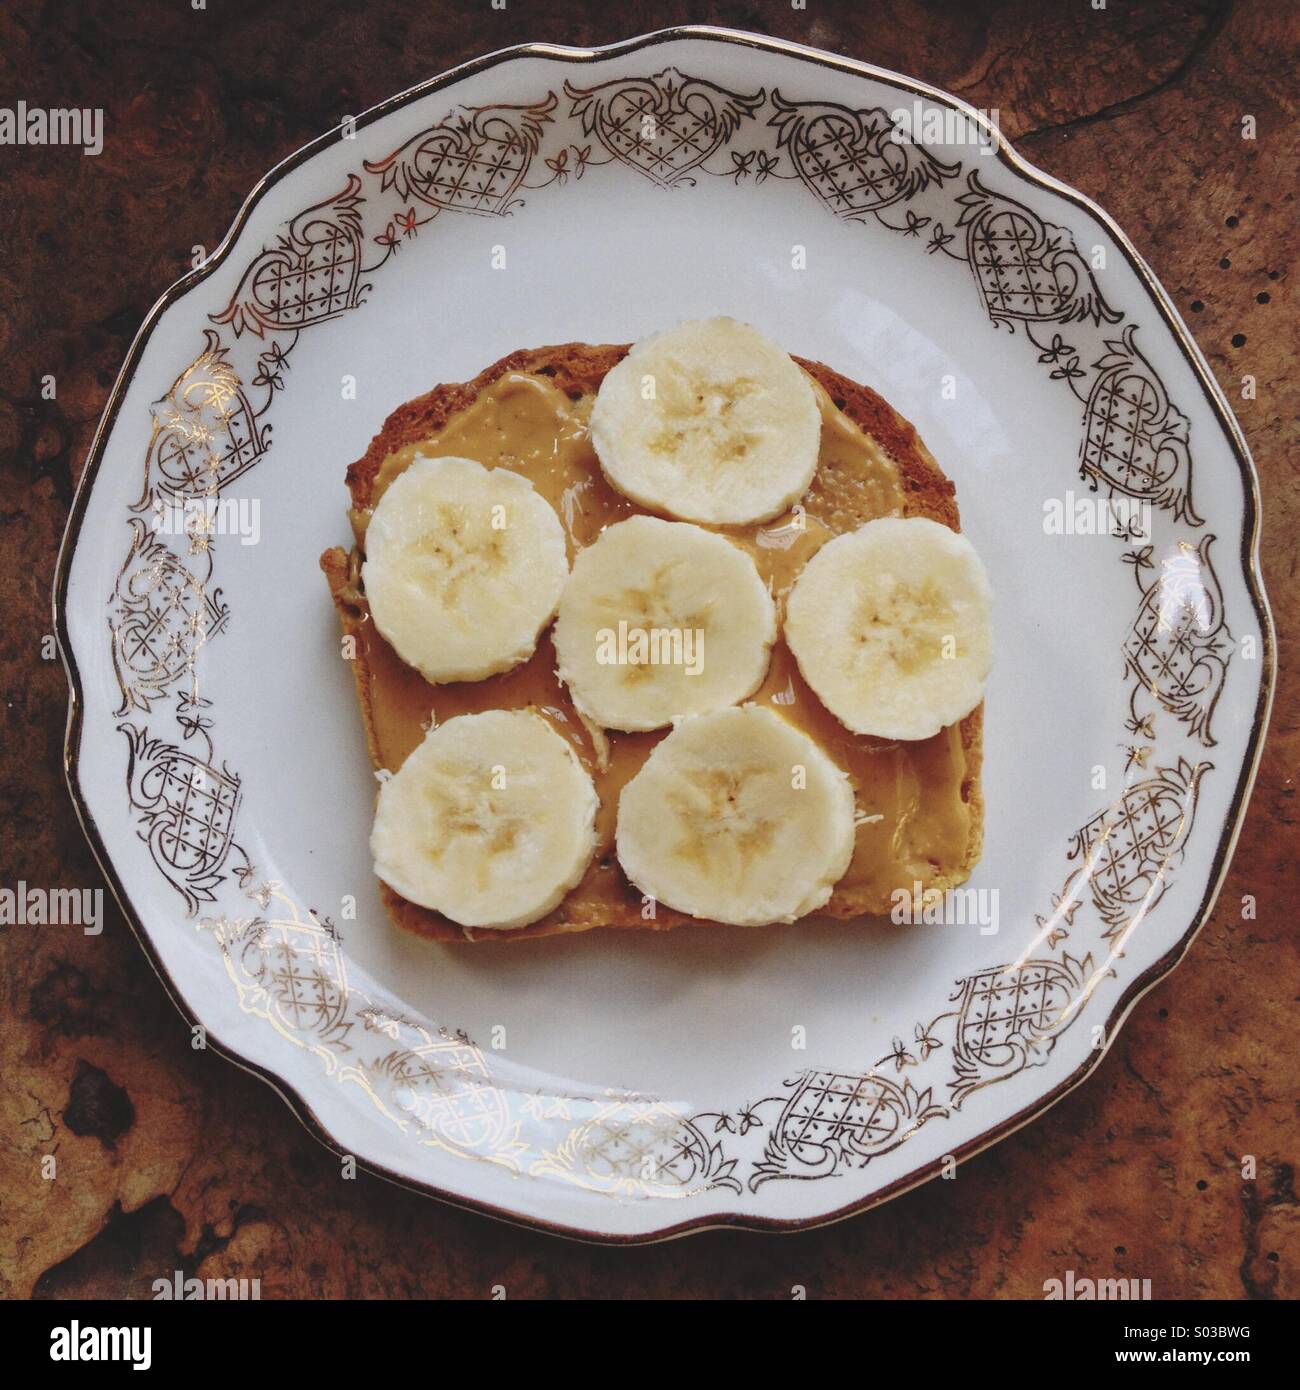 Offenen konfrontiert Erdnussbutter und in Scheiben geschnittenen Bananen Sandwich auf Lust auf gold und weißen Porzellanteller auf rustikalen Tisch Stockfoto